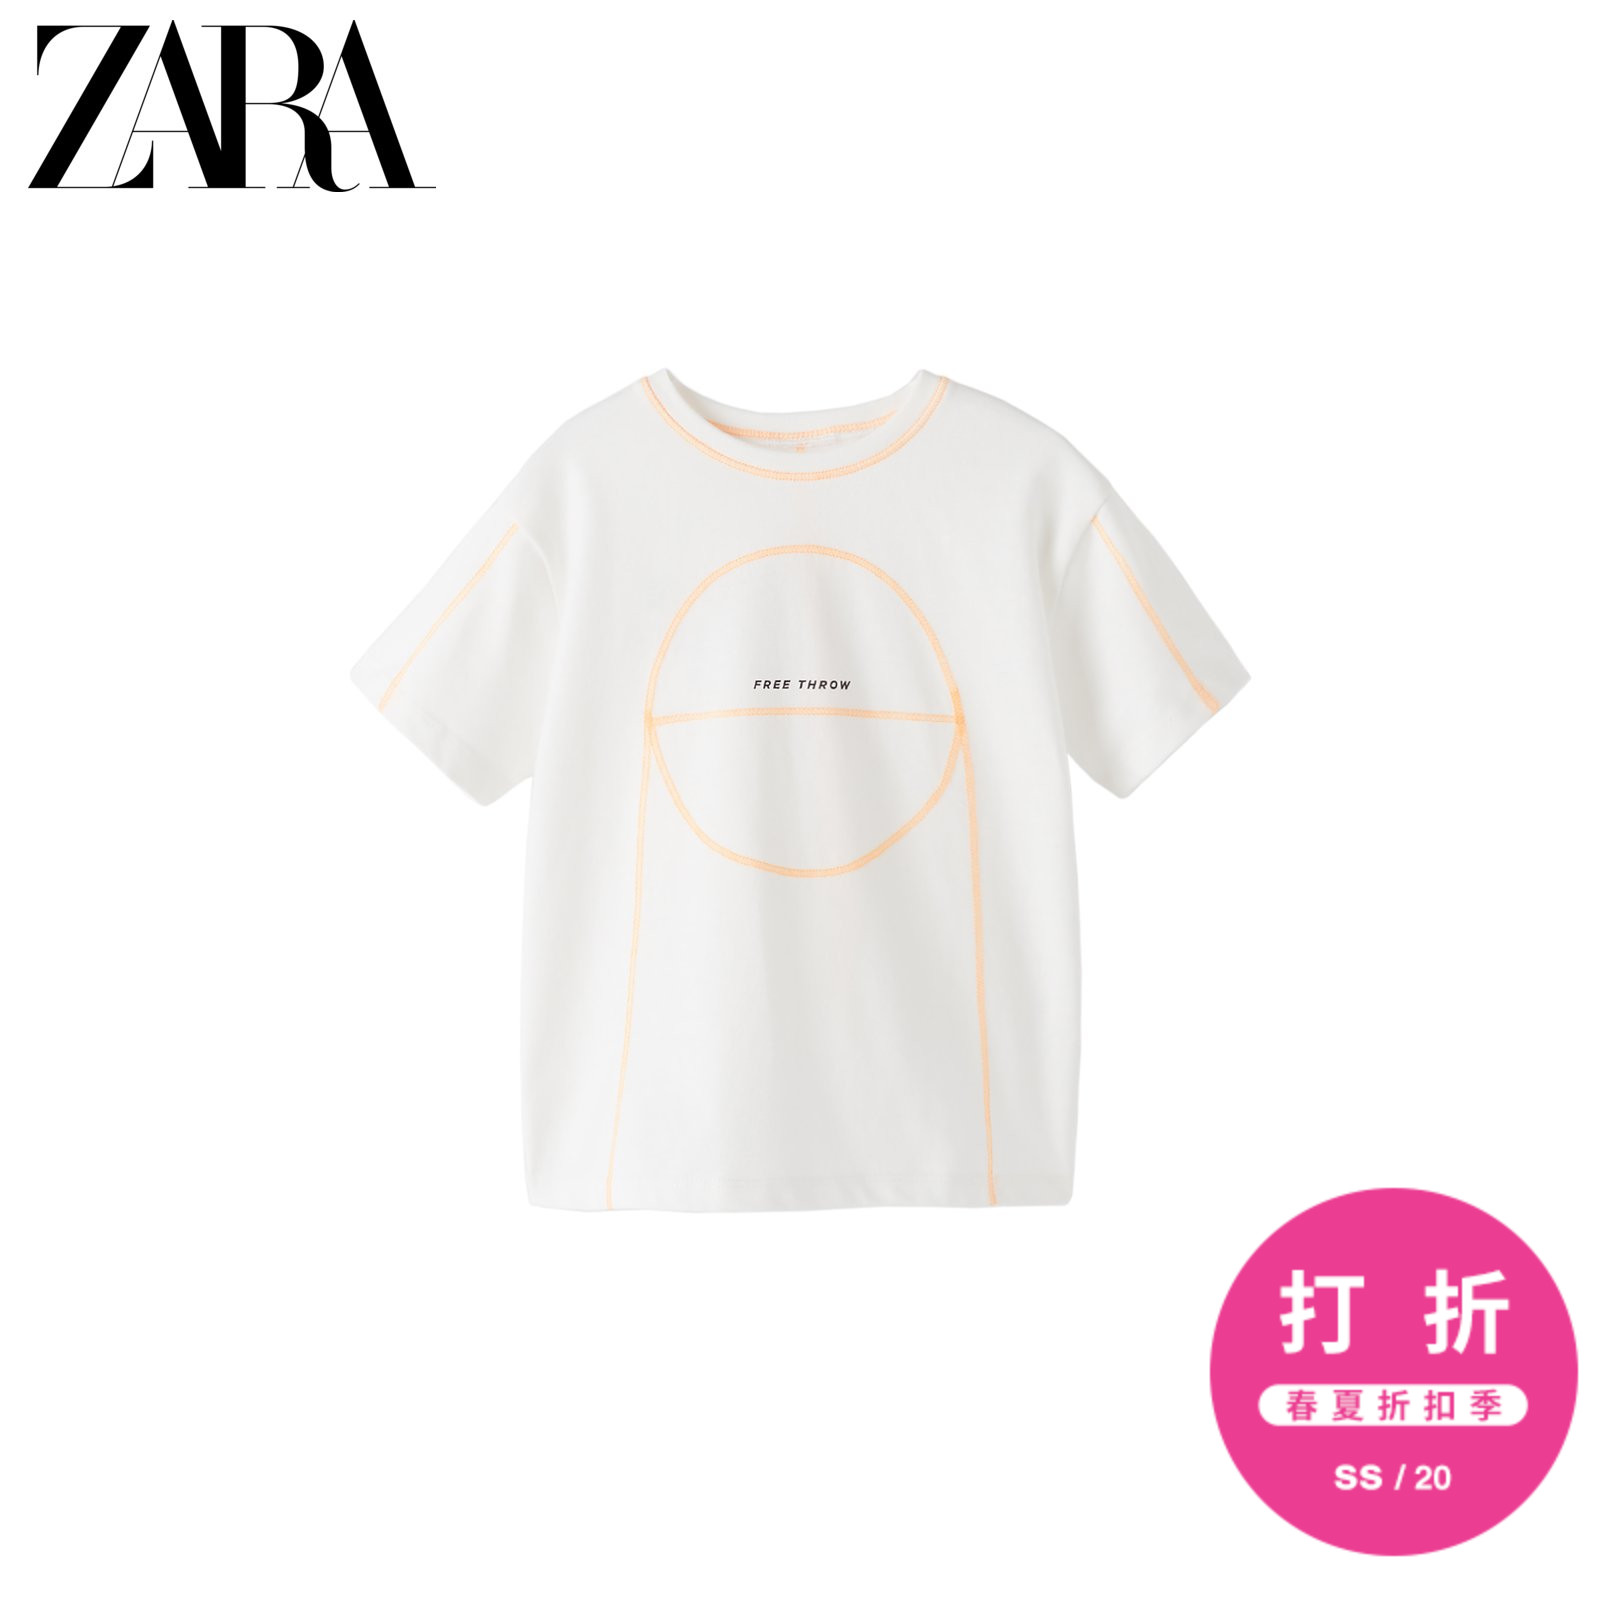 ZARA 新款 男婴幼童 春夏新品 运动型篮球T恤 03337596250